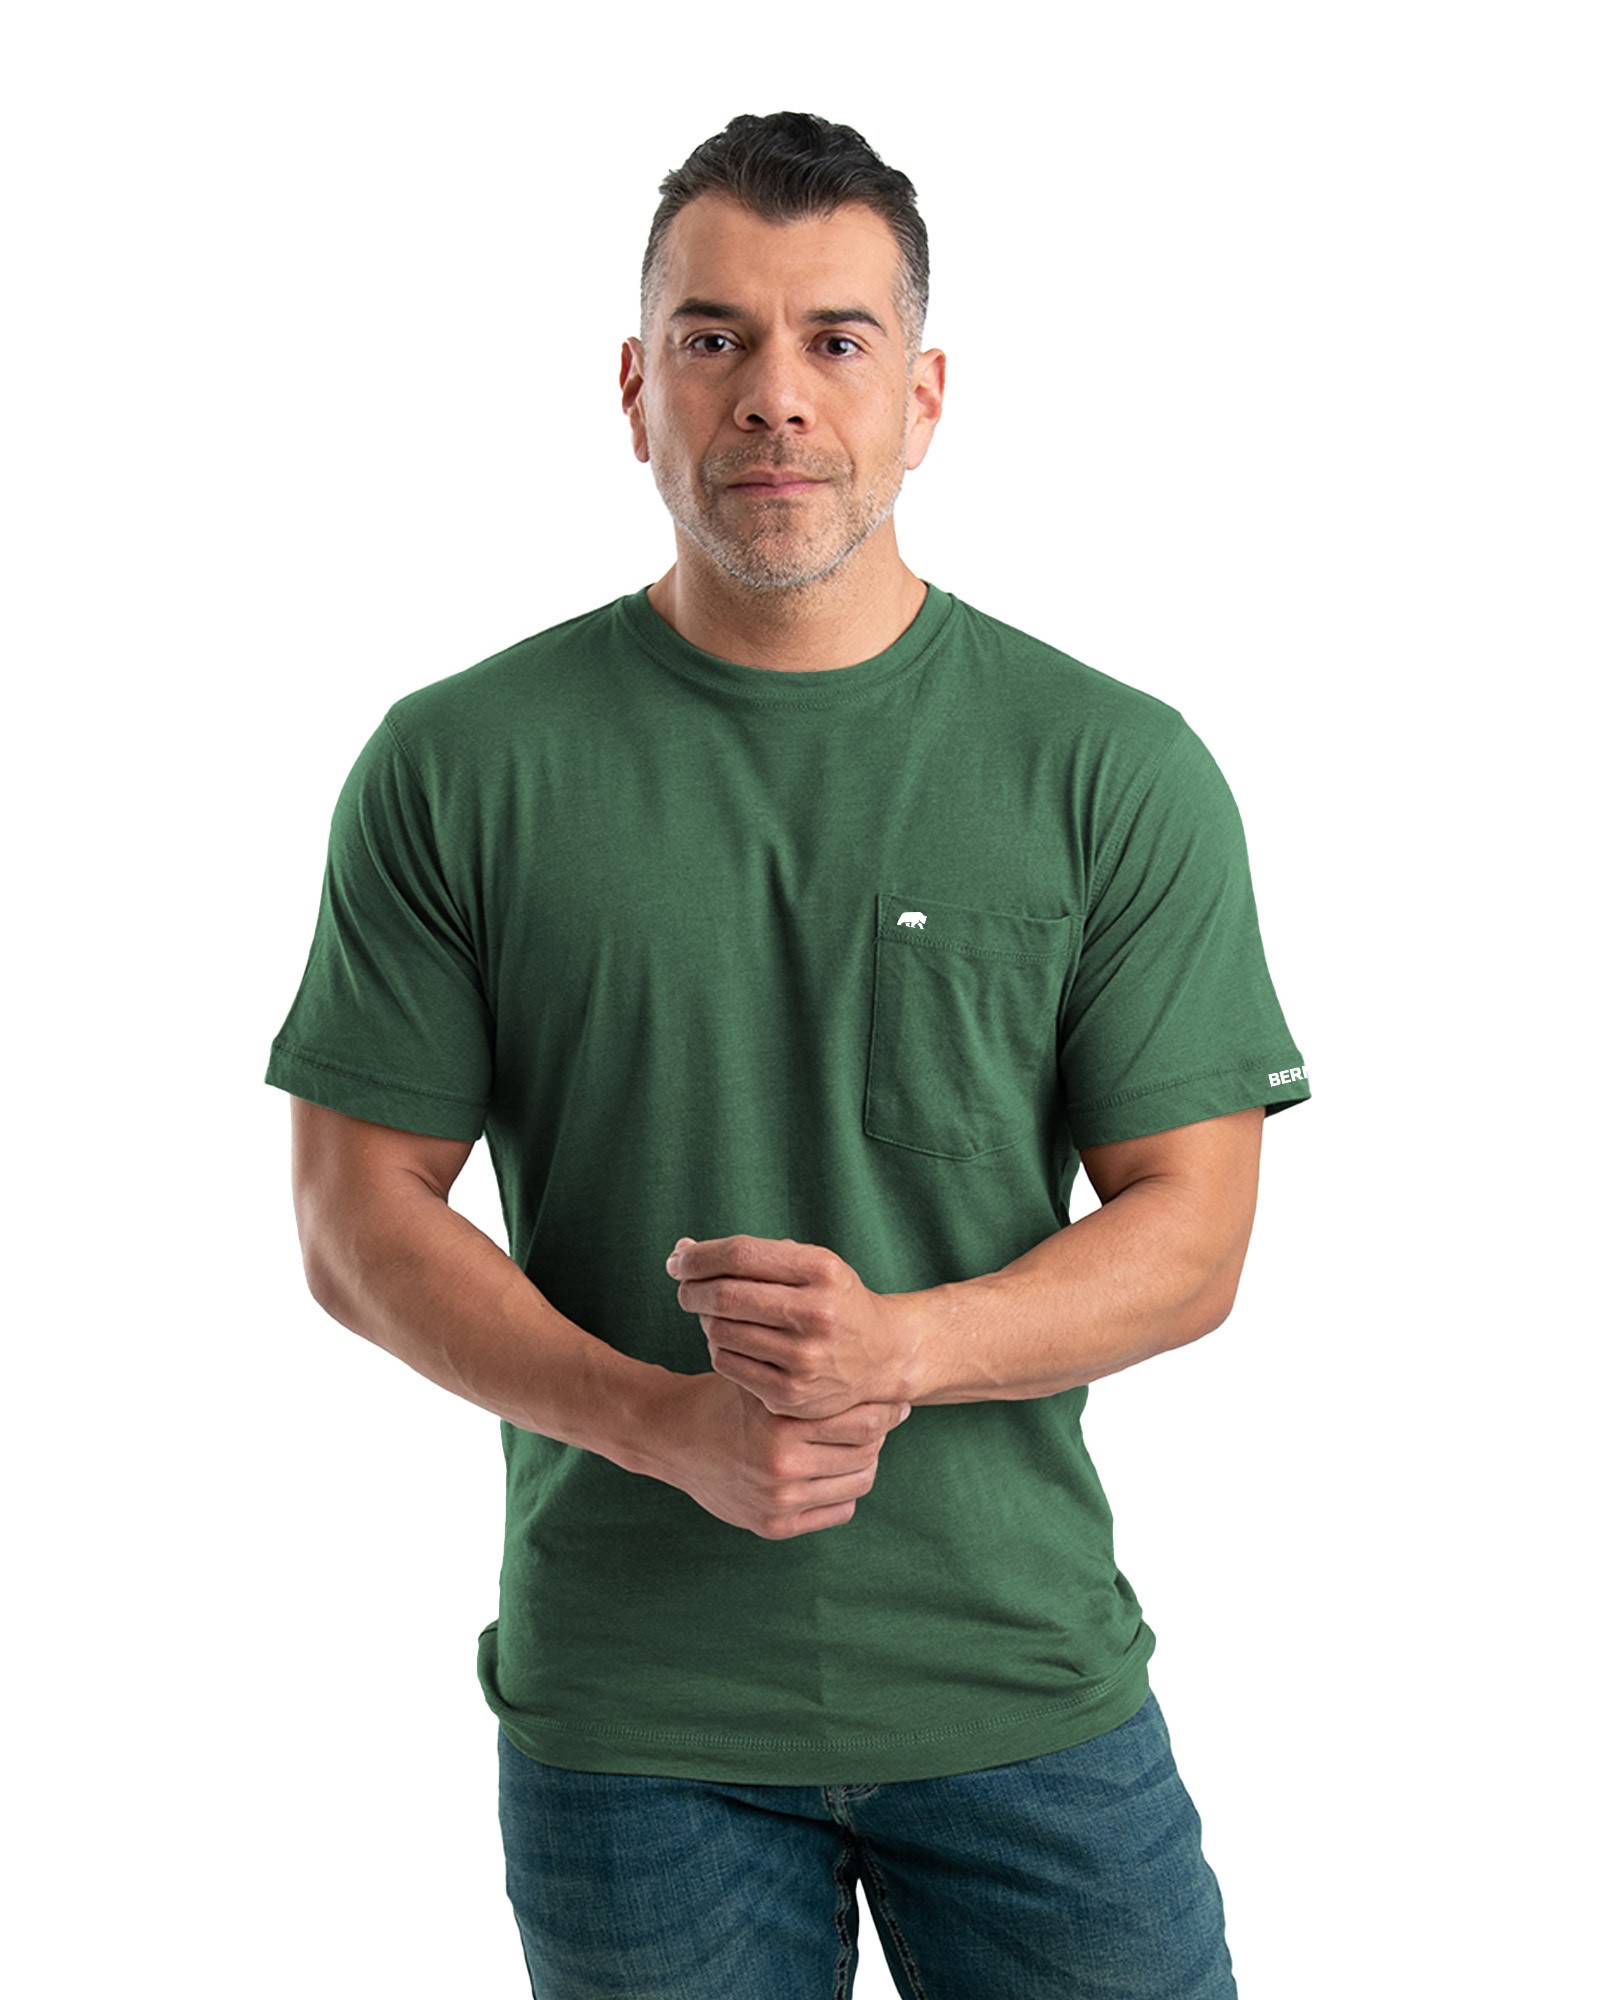 Men's Berne Lightweight Performance T-Shirt